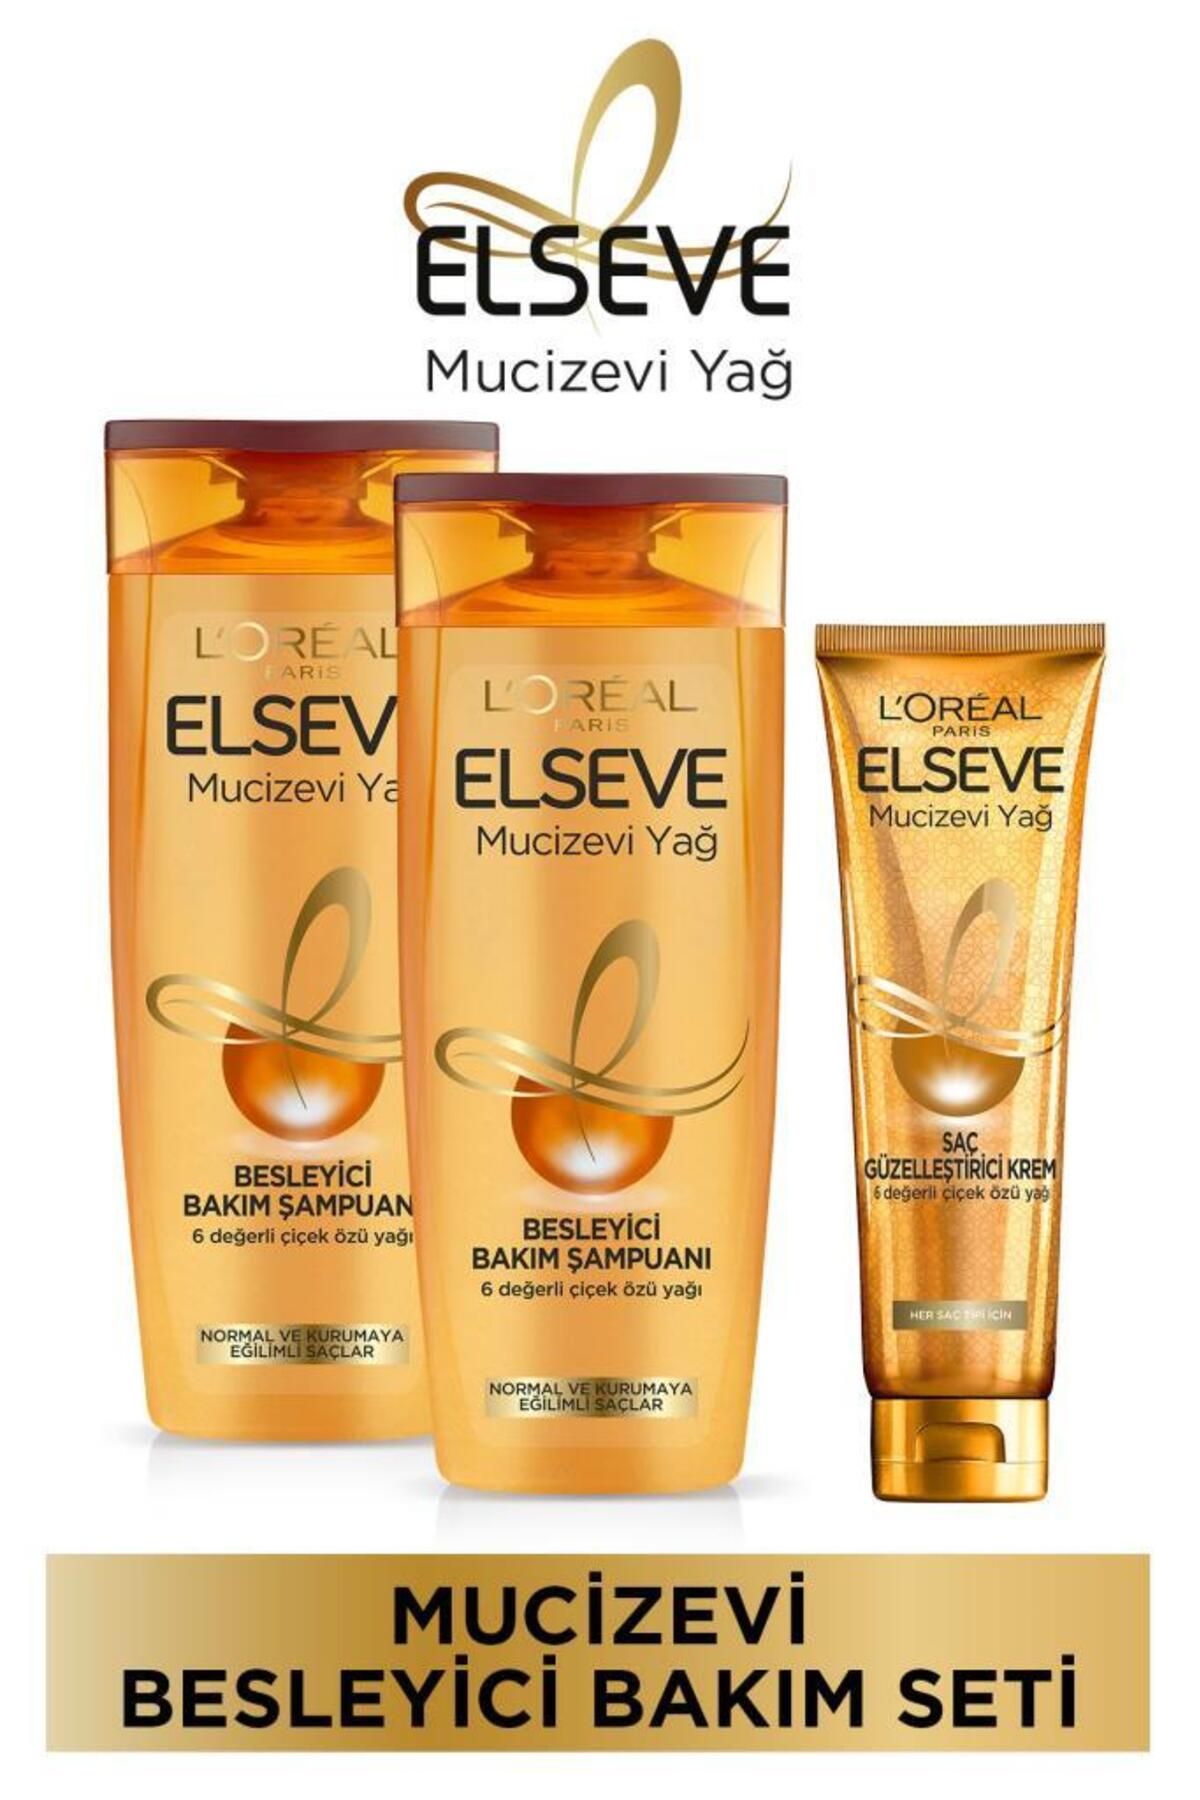 Elseve Mucizevi Yağ Besleyici Bakım Şampuan 360ml 2'li & Saç Güzelleştirici Krem